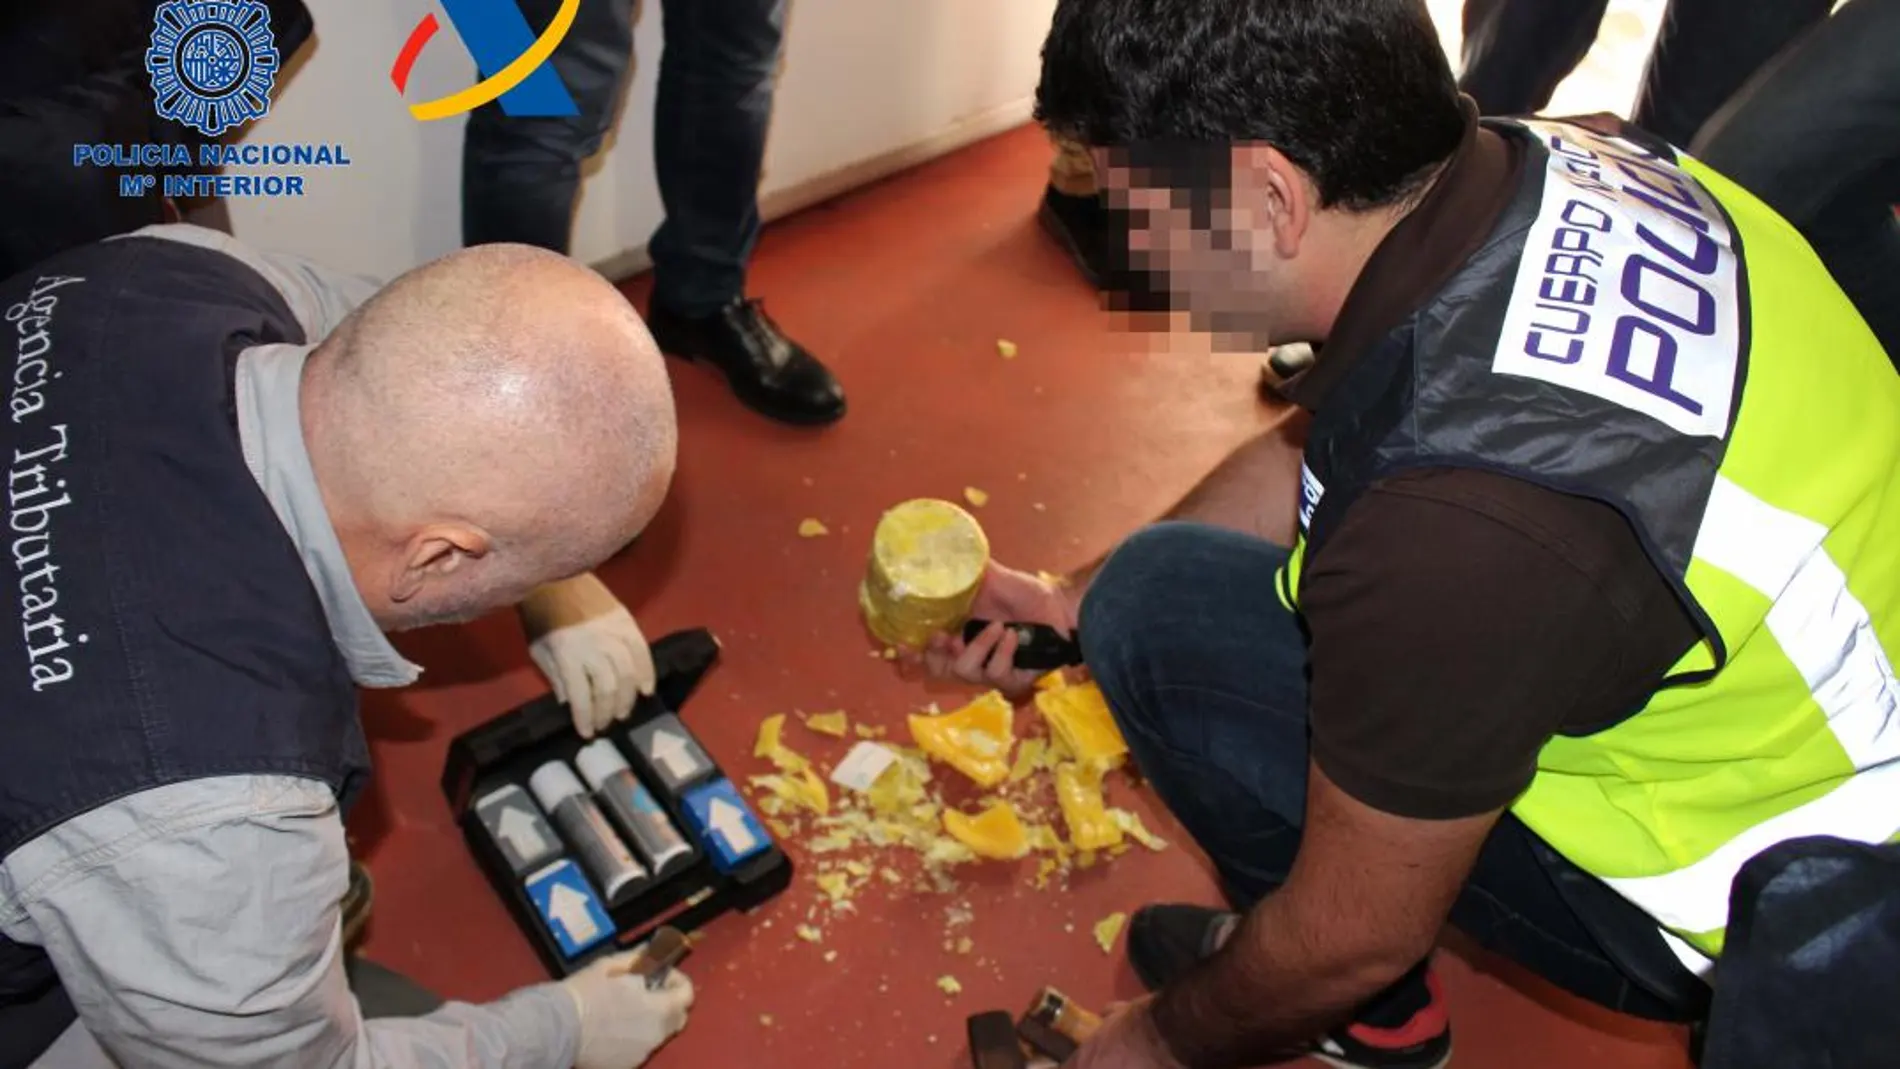 Los agentes hallaron más de 960 kilogramos de clorhidrato de cocaína ocultos en un cargamento de piñas